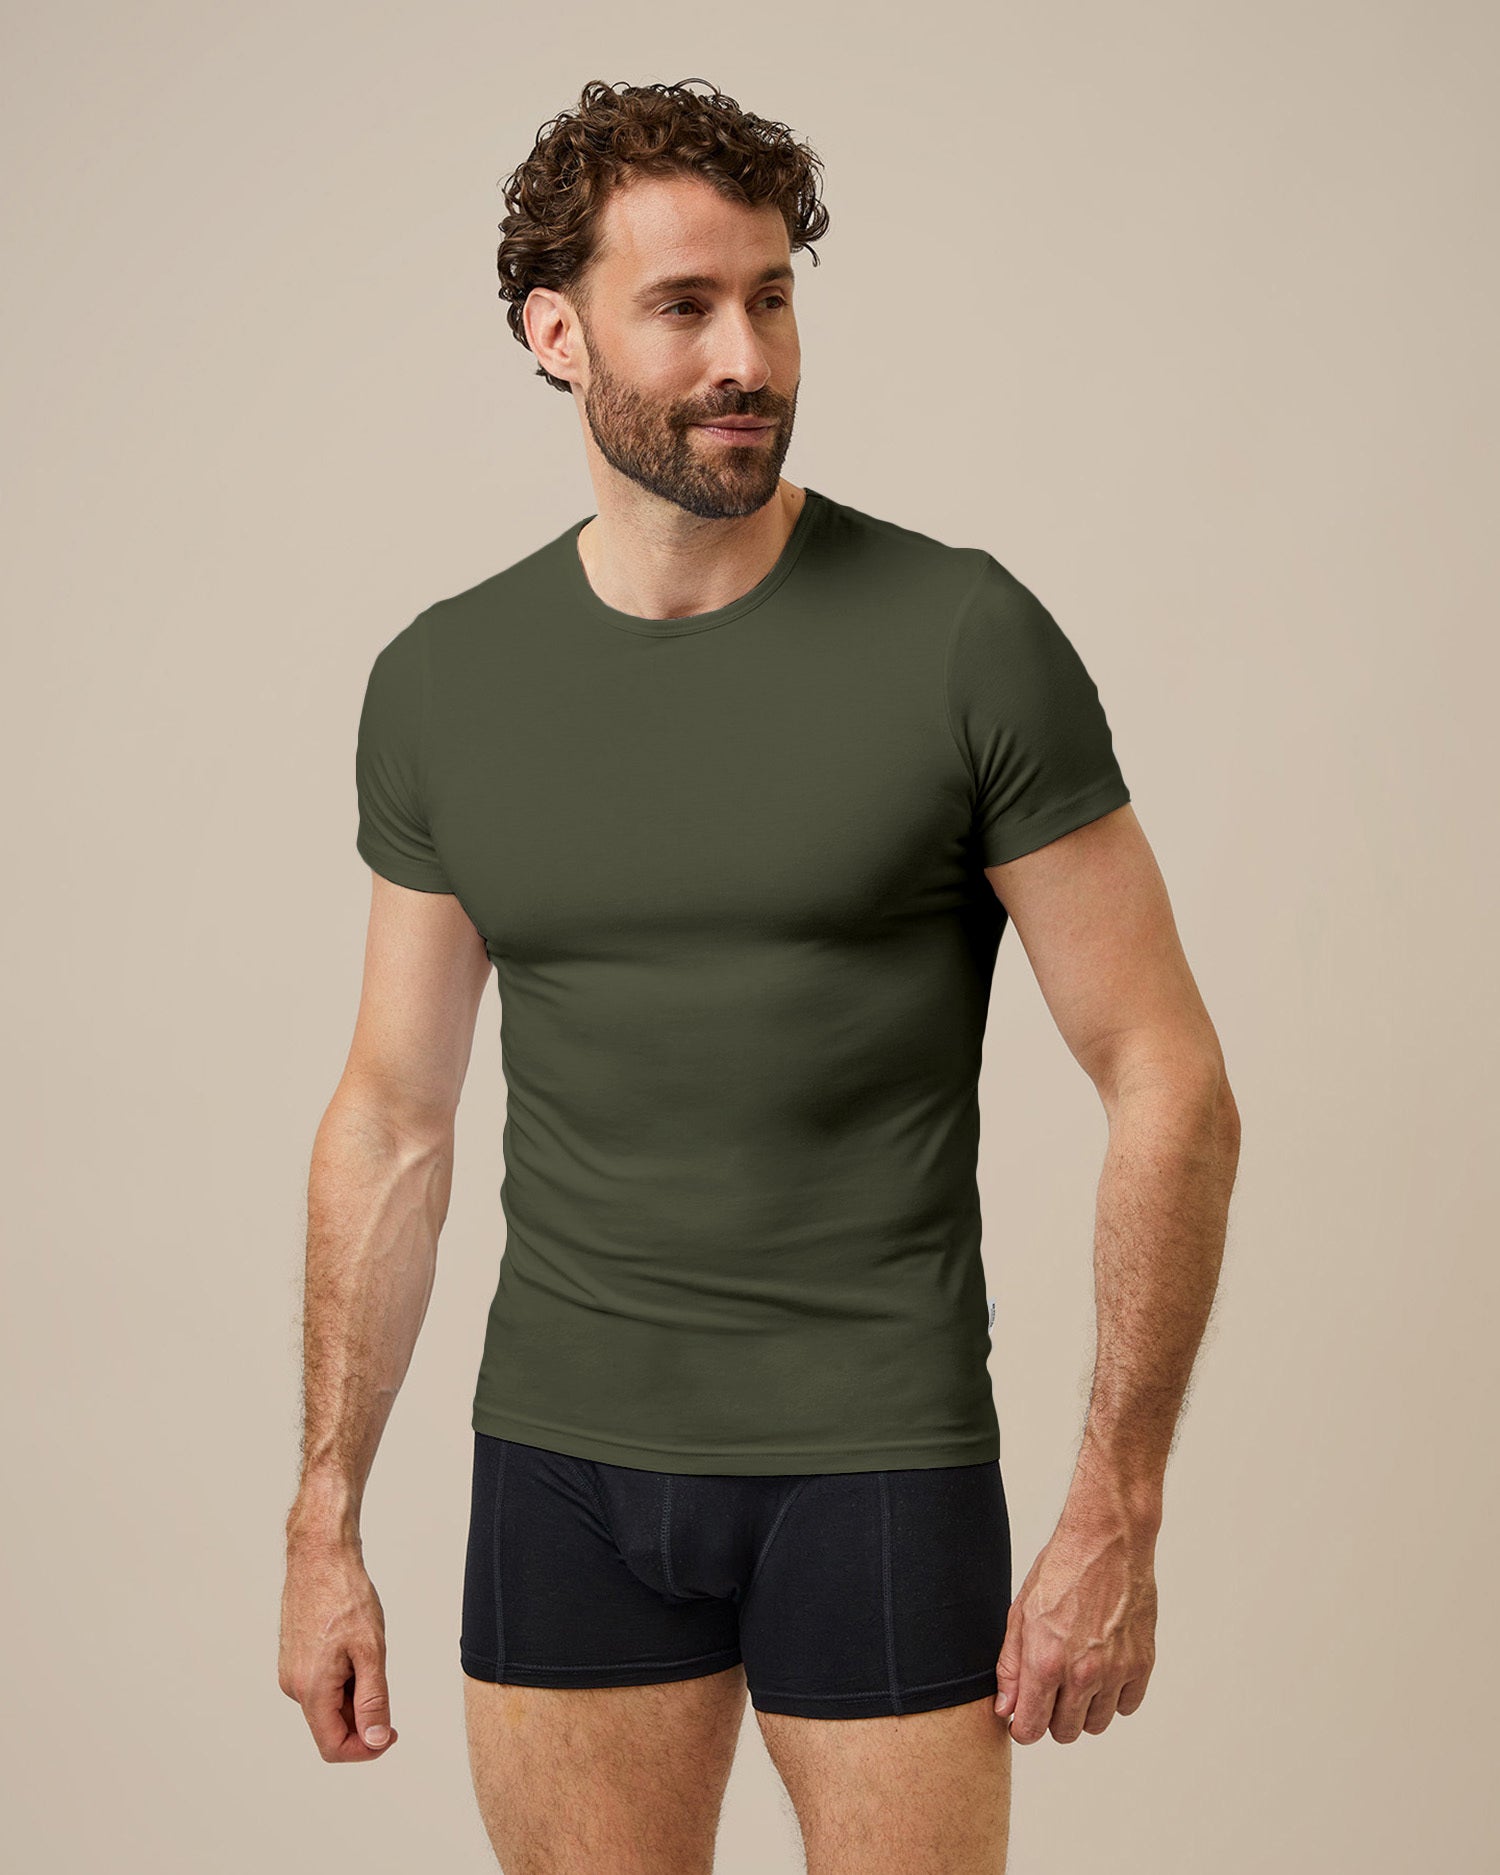 BOXR | T-shirt en bambou - Lot de 2 - Olive Verte